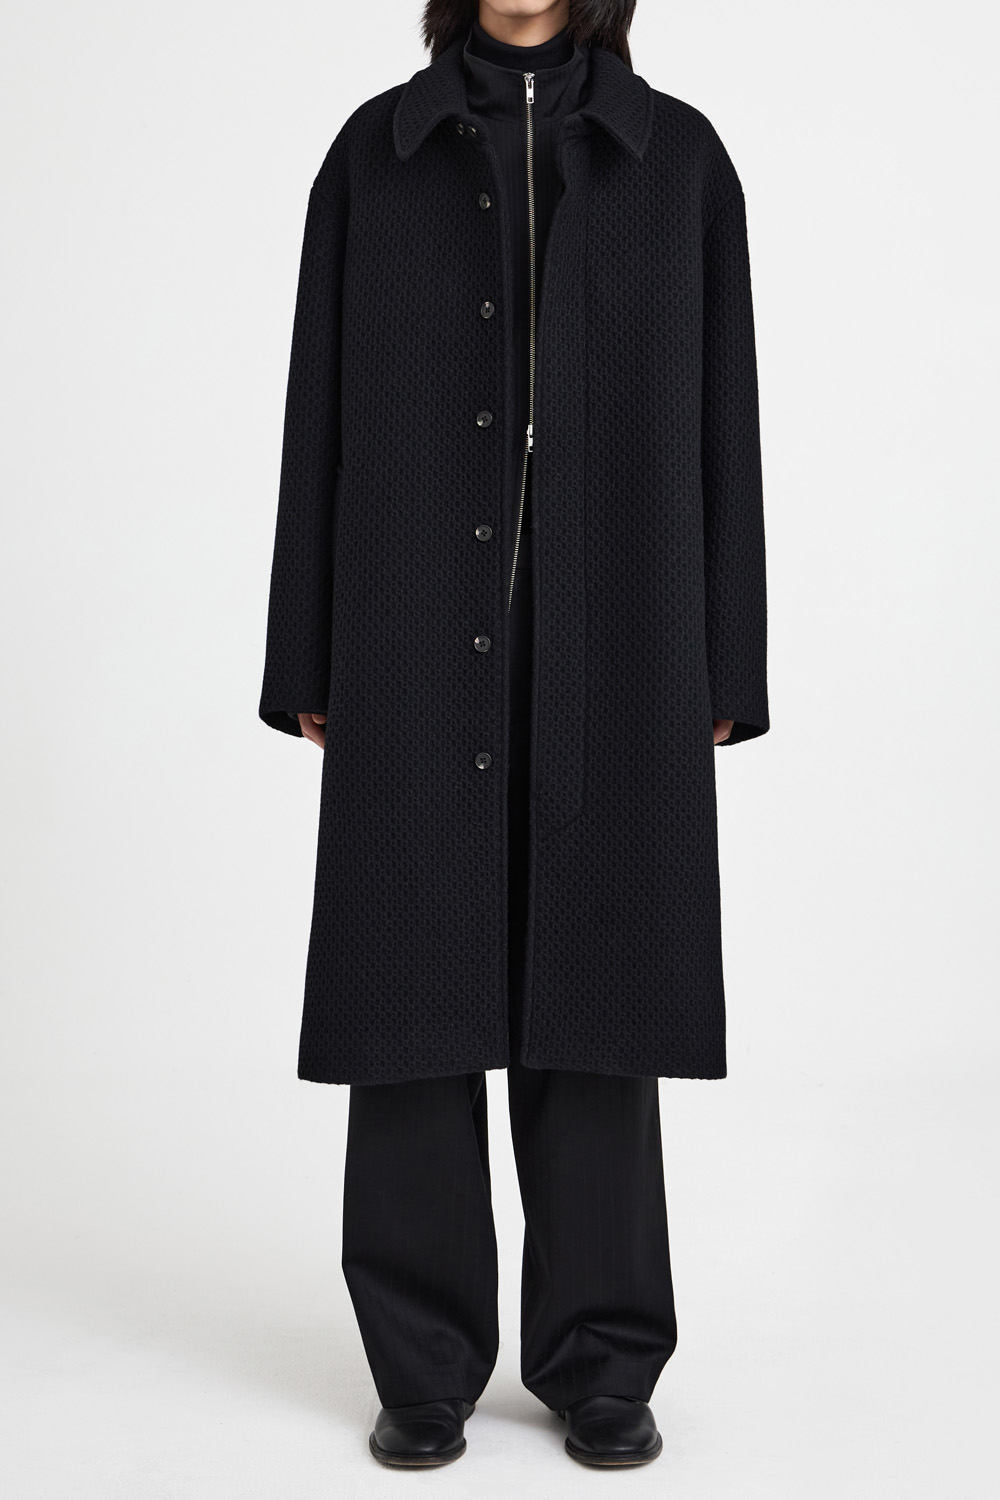 Balmacaan Coat - Black Tweed